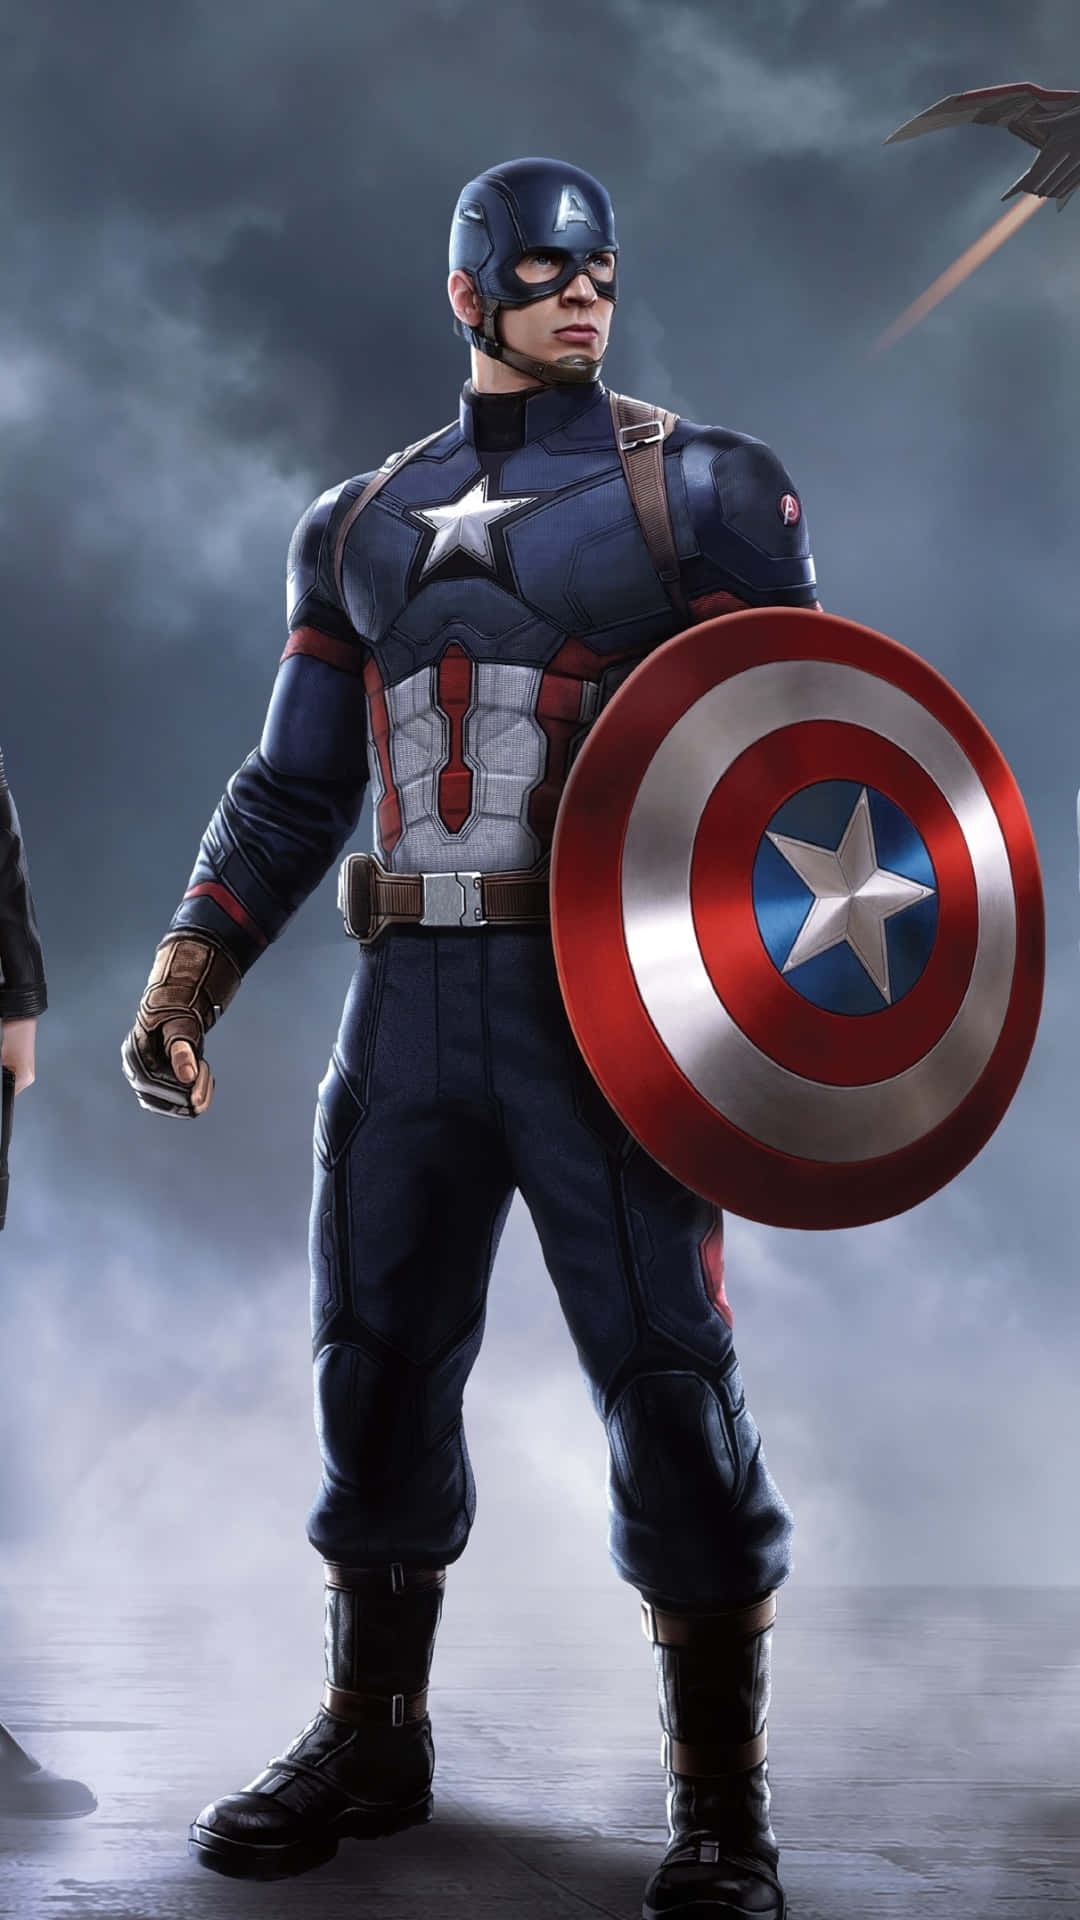 Laimagen Muestra Al Capitán América Triunfante, Como Un Símbolo De Justicia. Fondo de pantalla